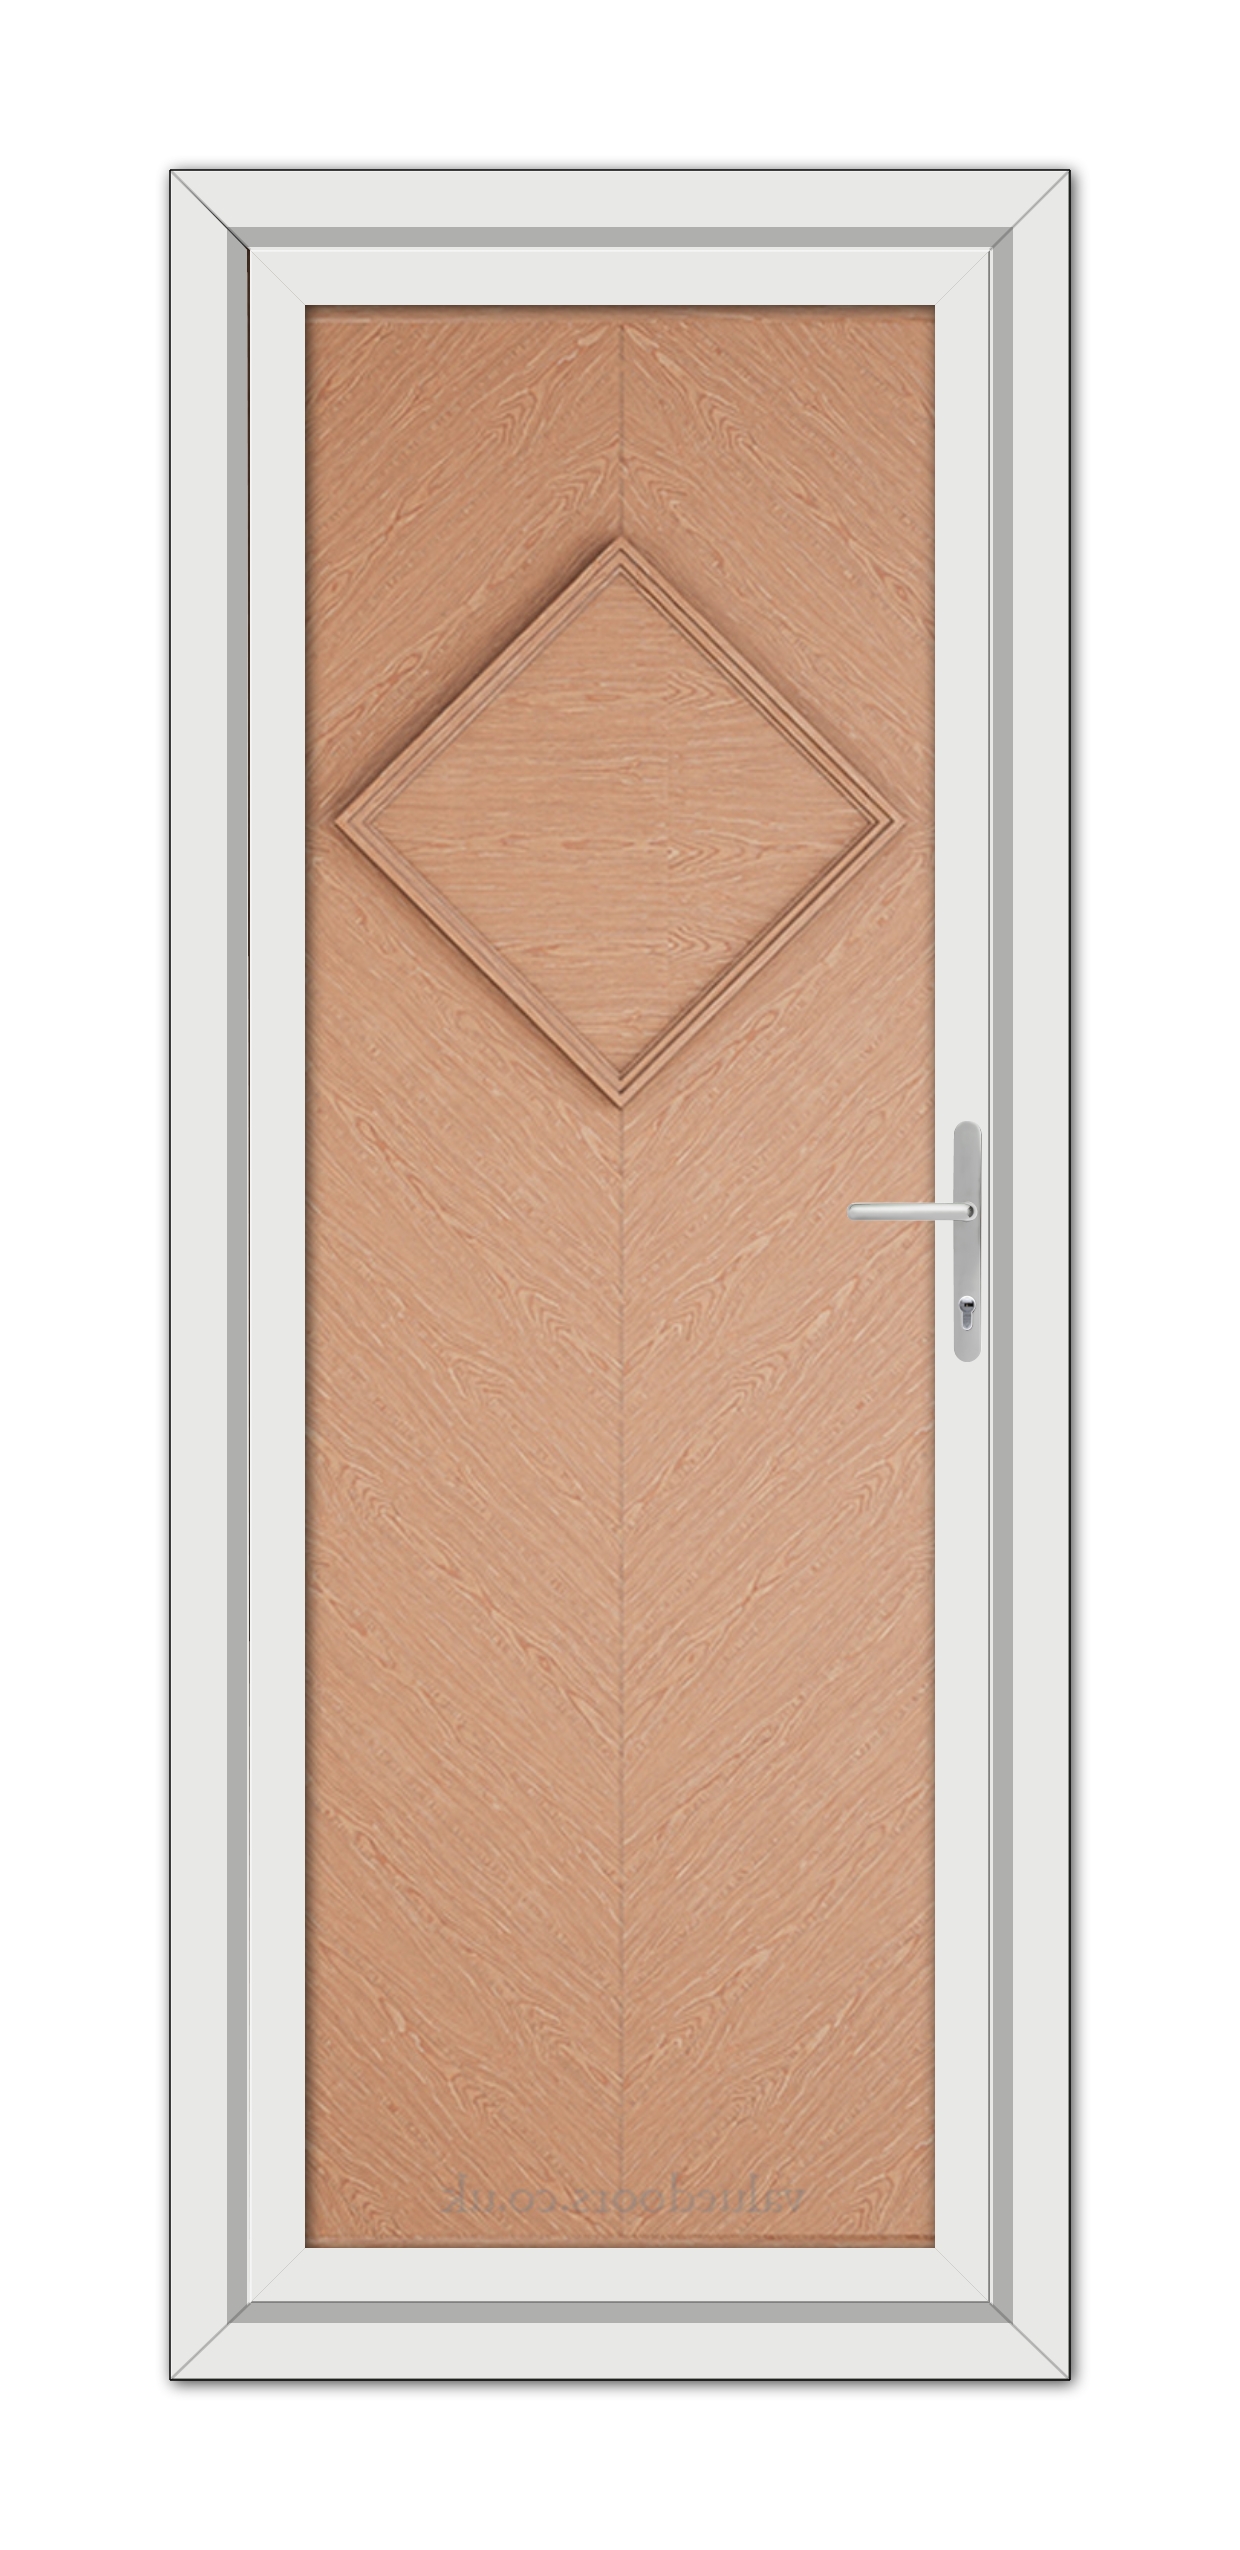 A close-up of a Irish Oak Hamburg Solid uPVC Door.